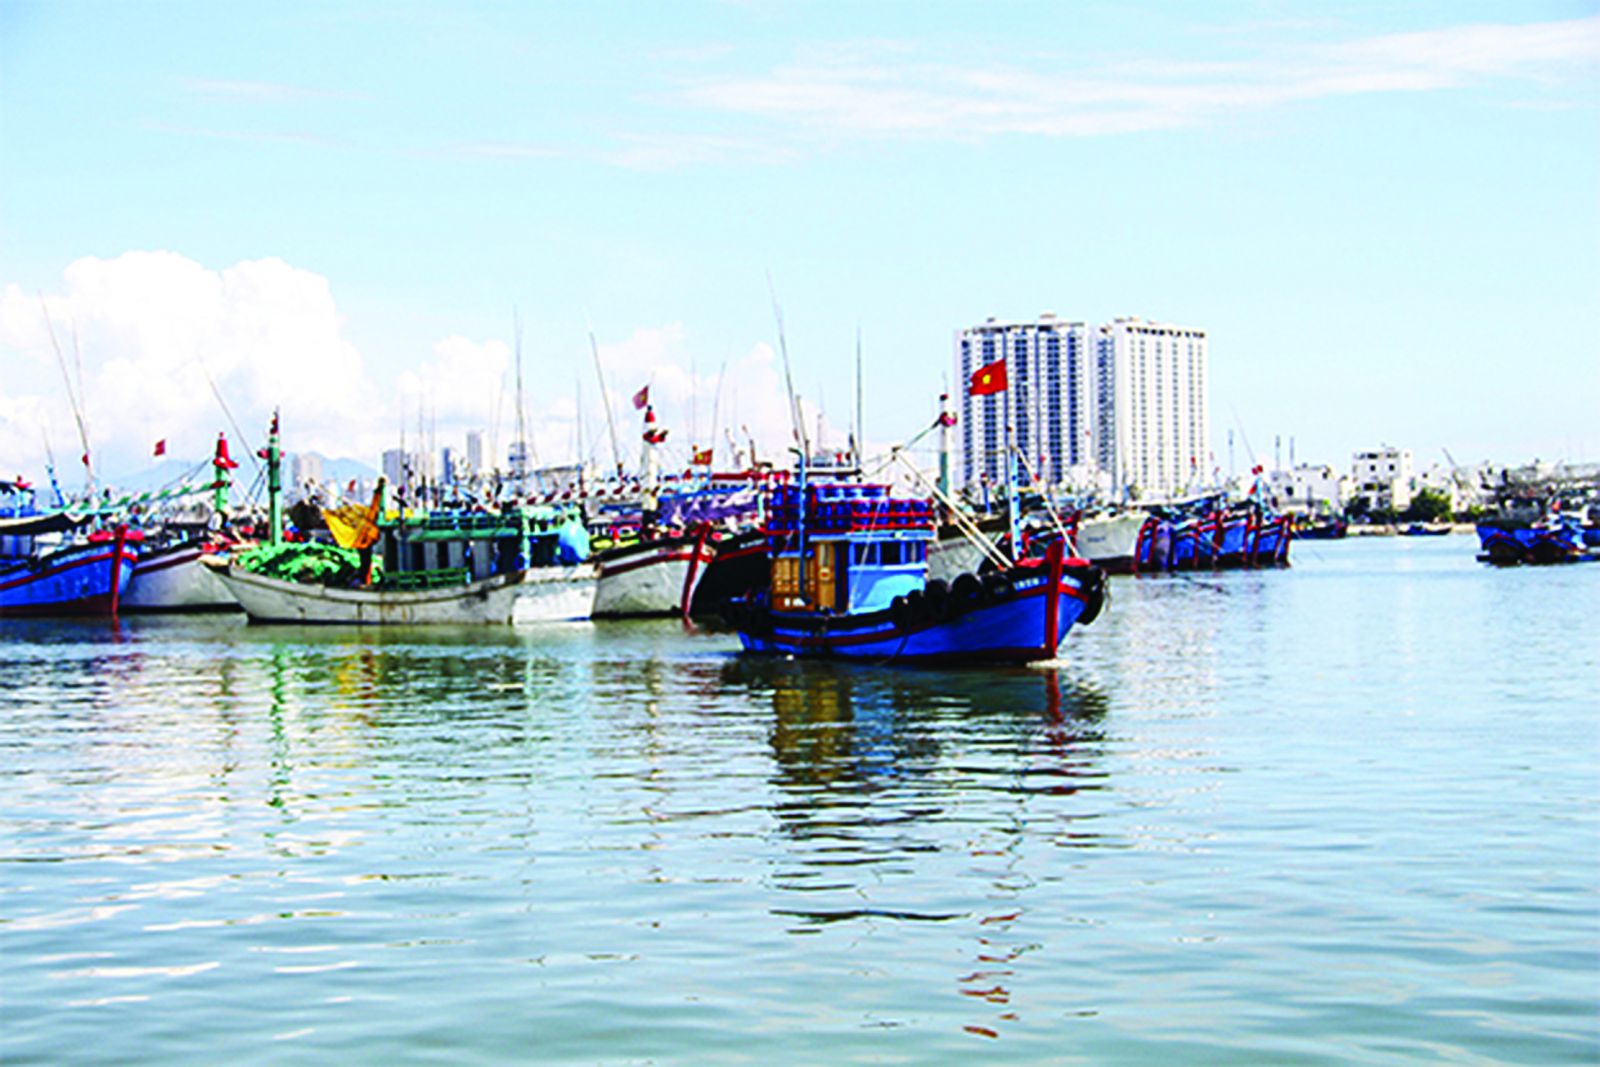  Khánh Hoà phát triển nghề cá gắn liền với vai trò bảo vệ chủ quyền và an ninh biển đảo. (Ảnh: Tàu cá neo đậu tại cảng Hòn Rớ, TP Nha Trang)